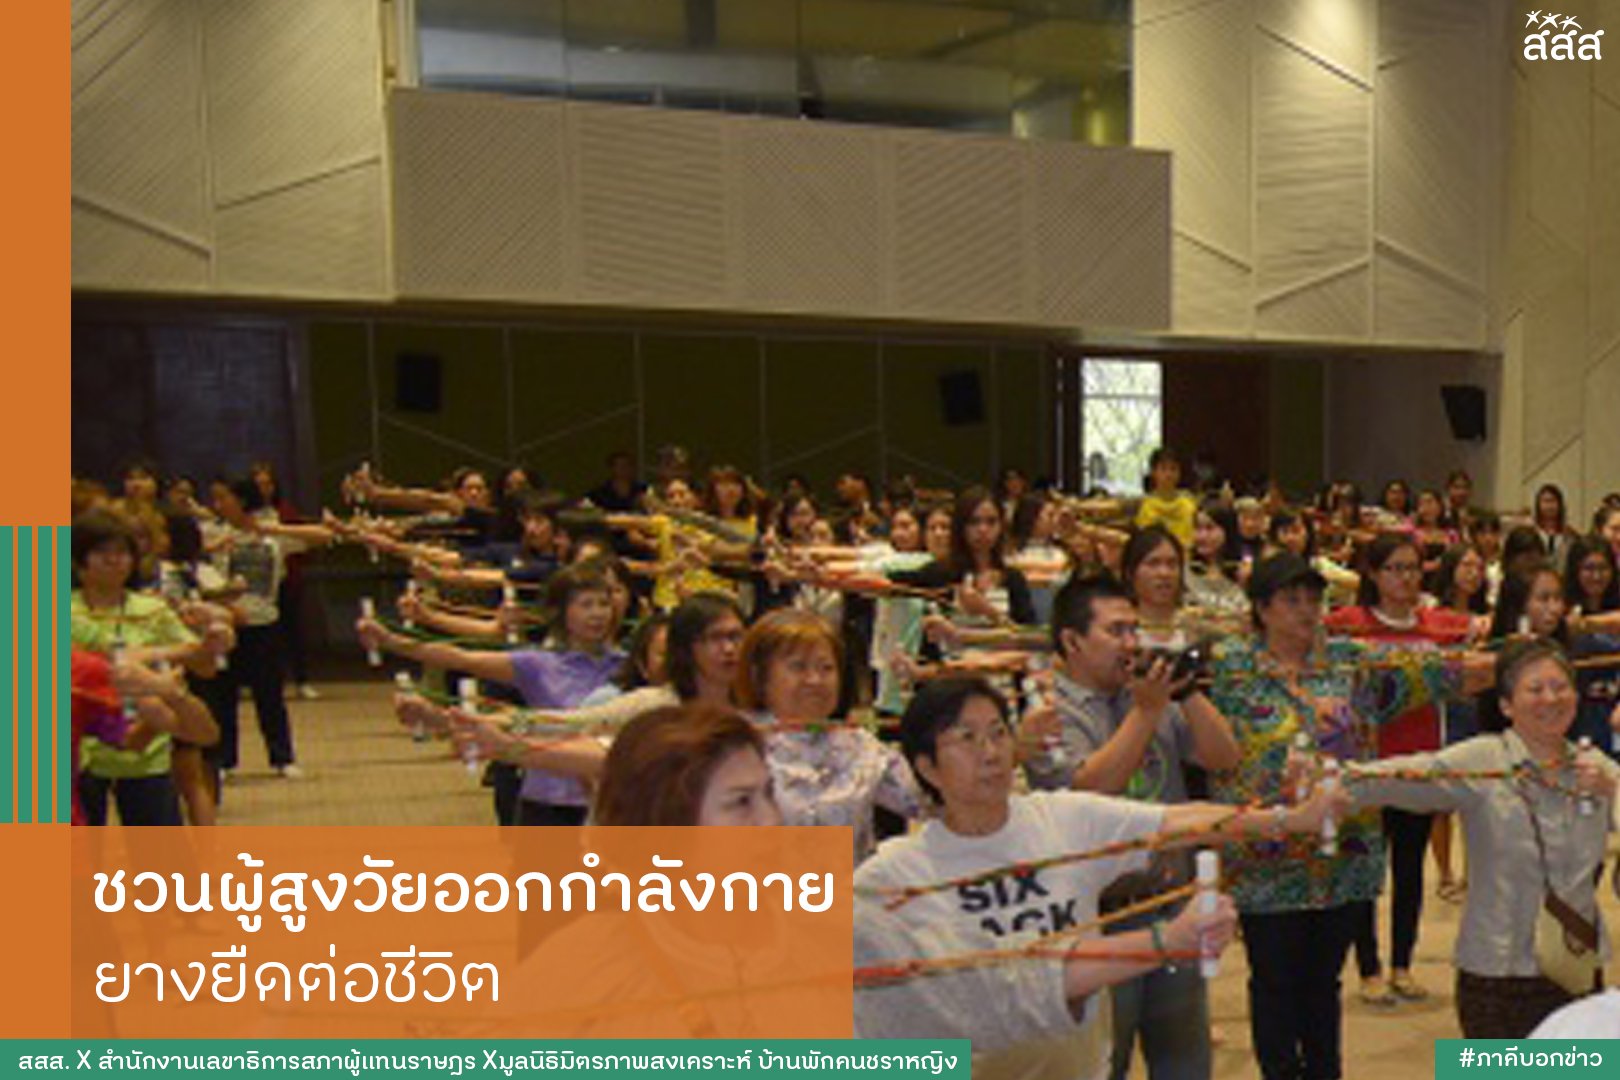 ชวนผู้สูงวัยออกกำลังกาย ยางยืดต่อชีวิต thaihealth